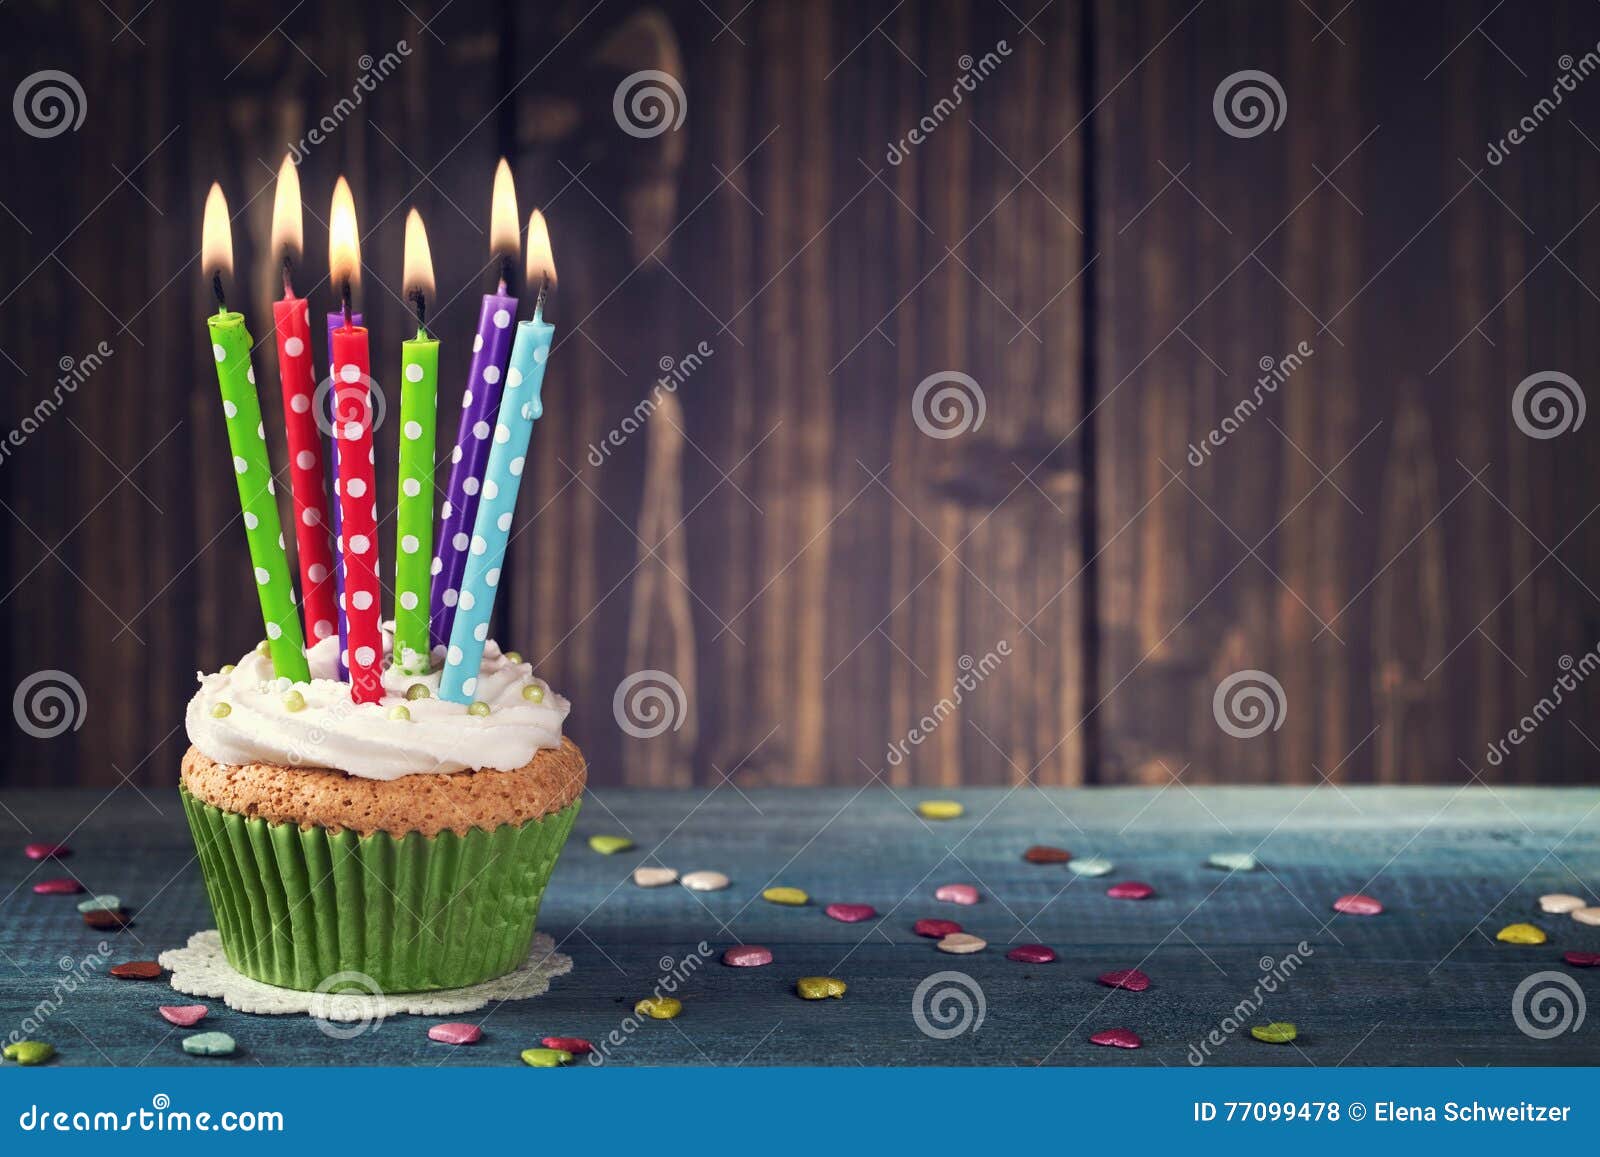 Joyeux anniversaire gâteau avec bougie | Sticker